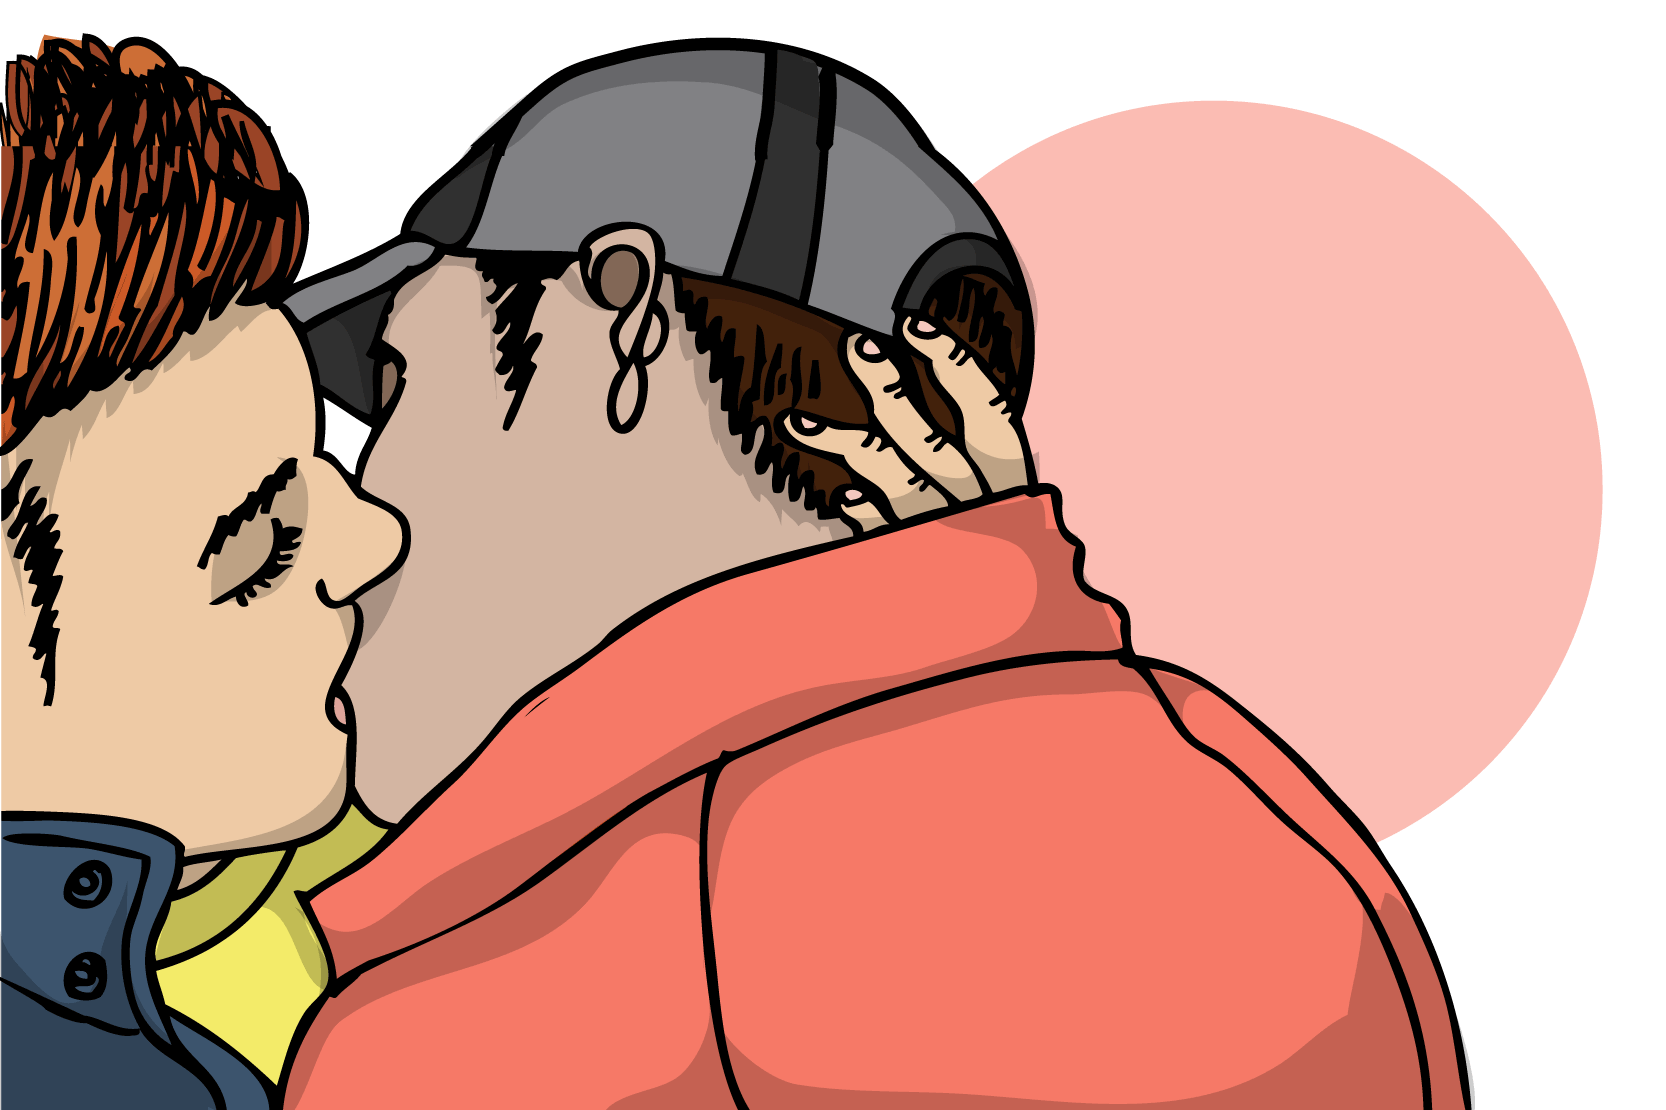 Två personer som kysser varandra. Illustration.